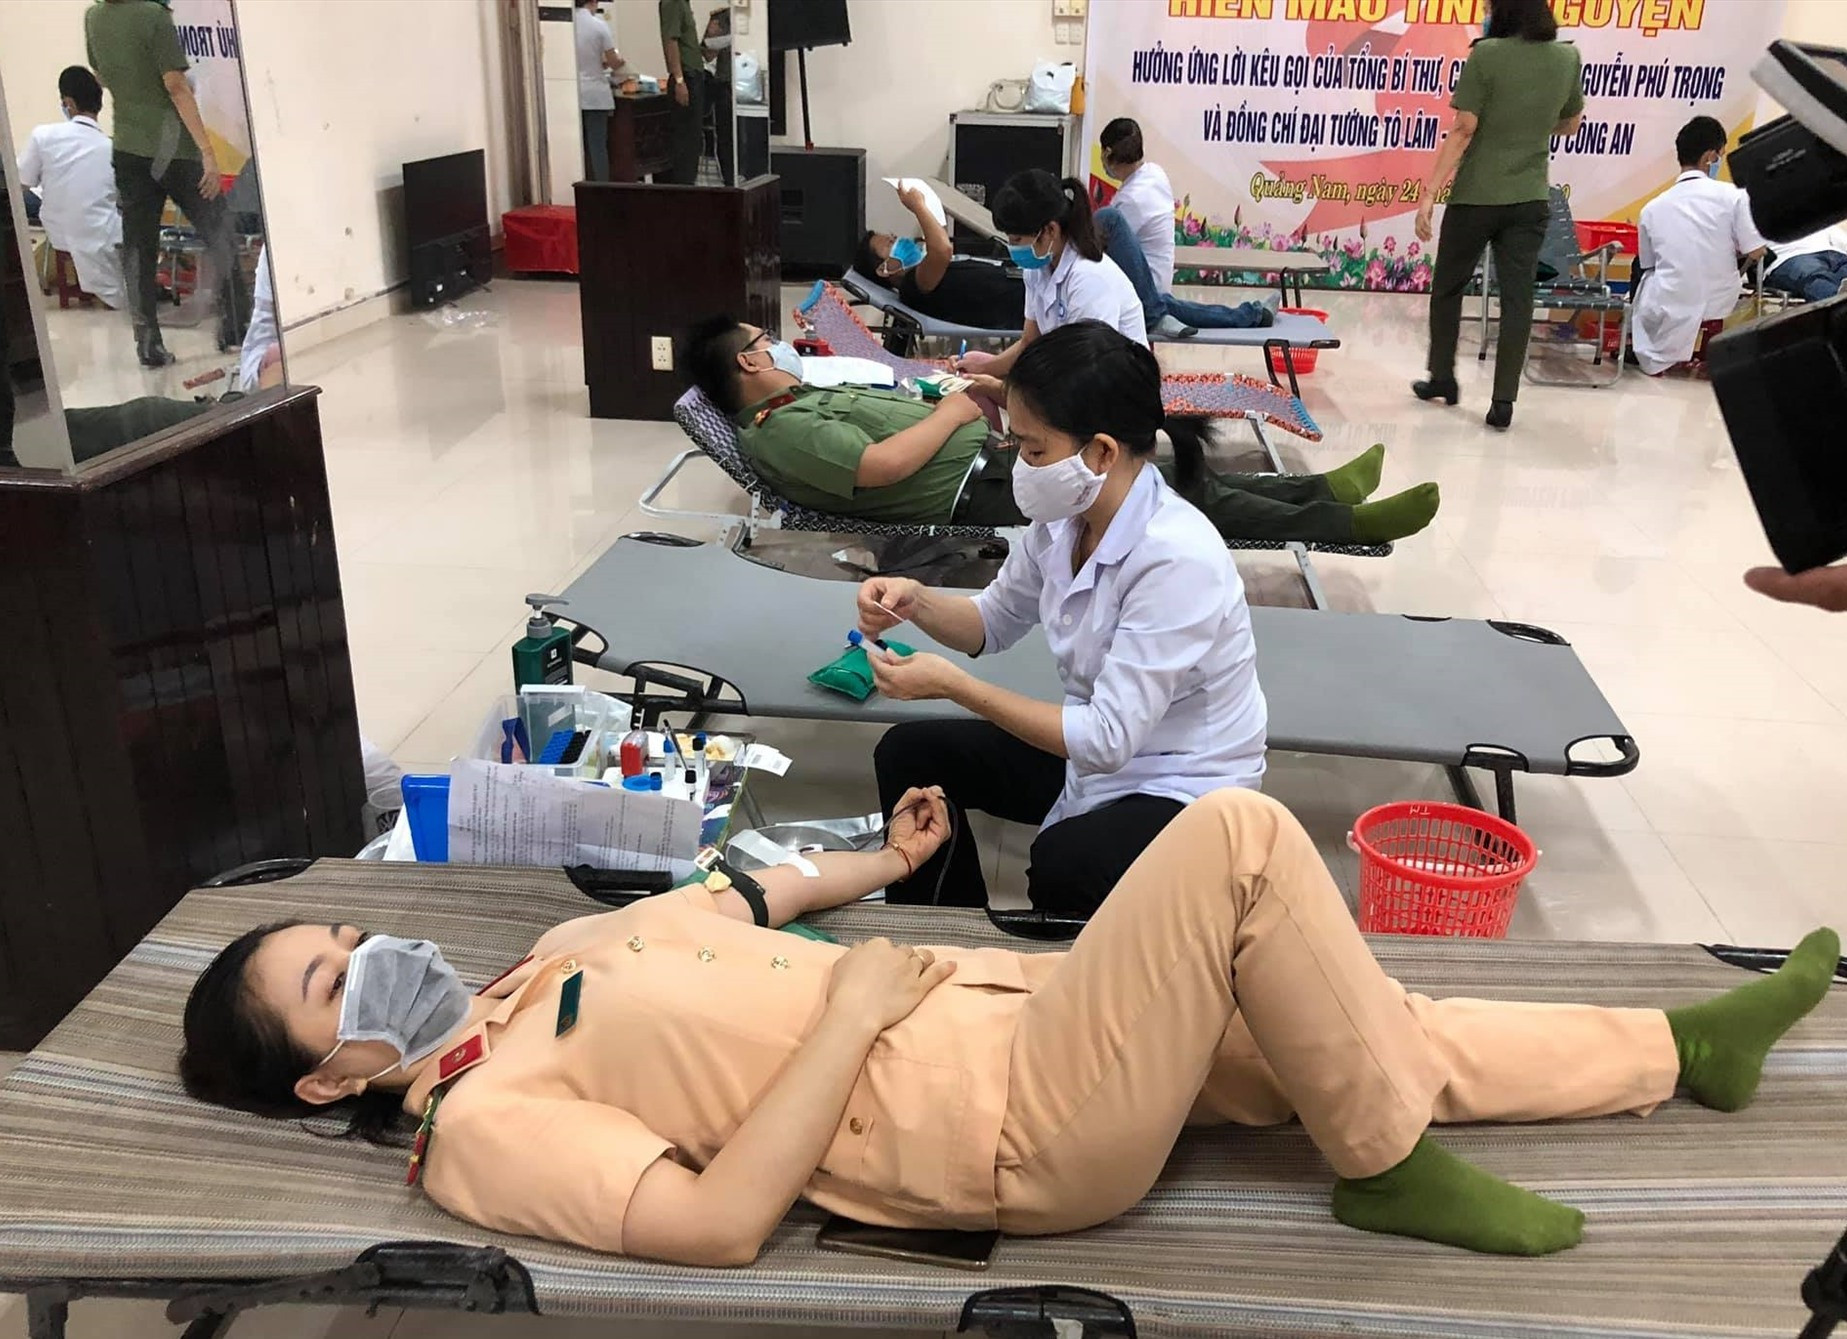 Cán bộ chiến sĩ công an Quảng Nam hiến máu tình nguyện trong đợt dịch Covid-19. Ảnh: A.N